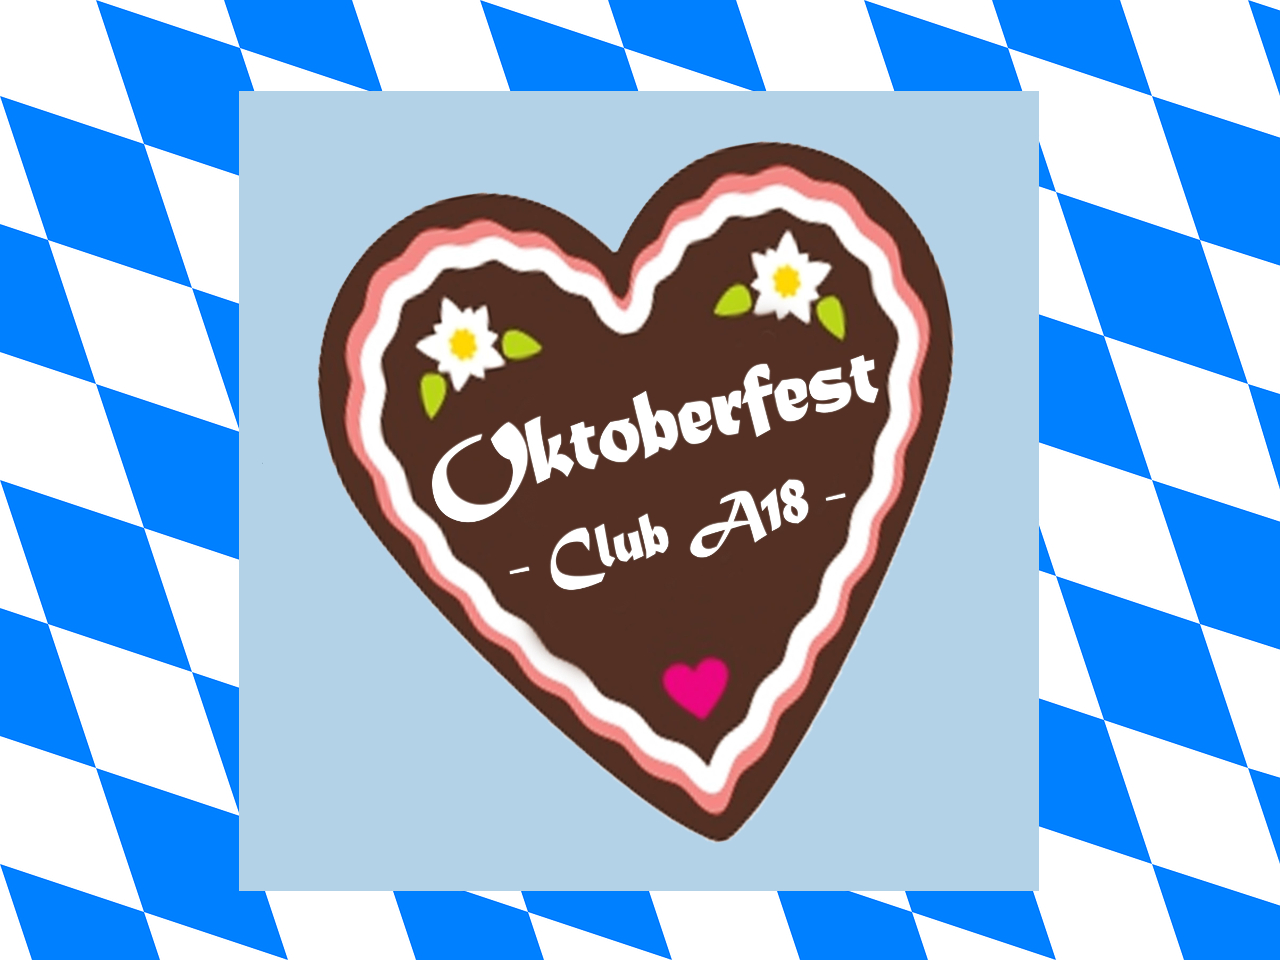 Club A18 OKTOBERFEST